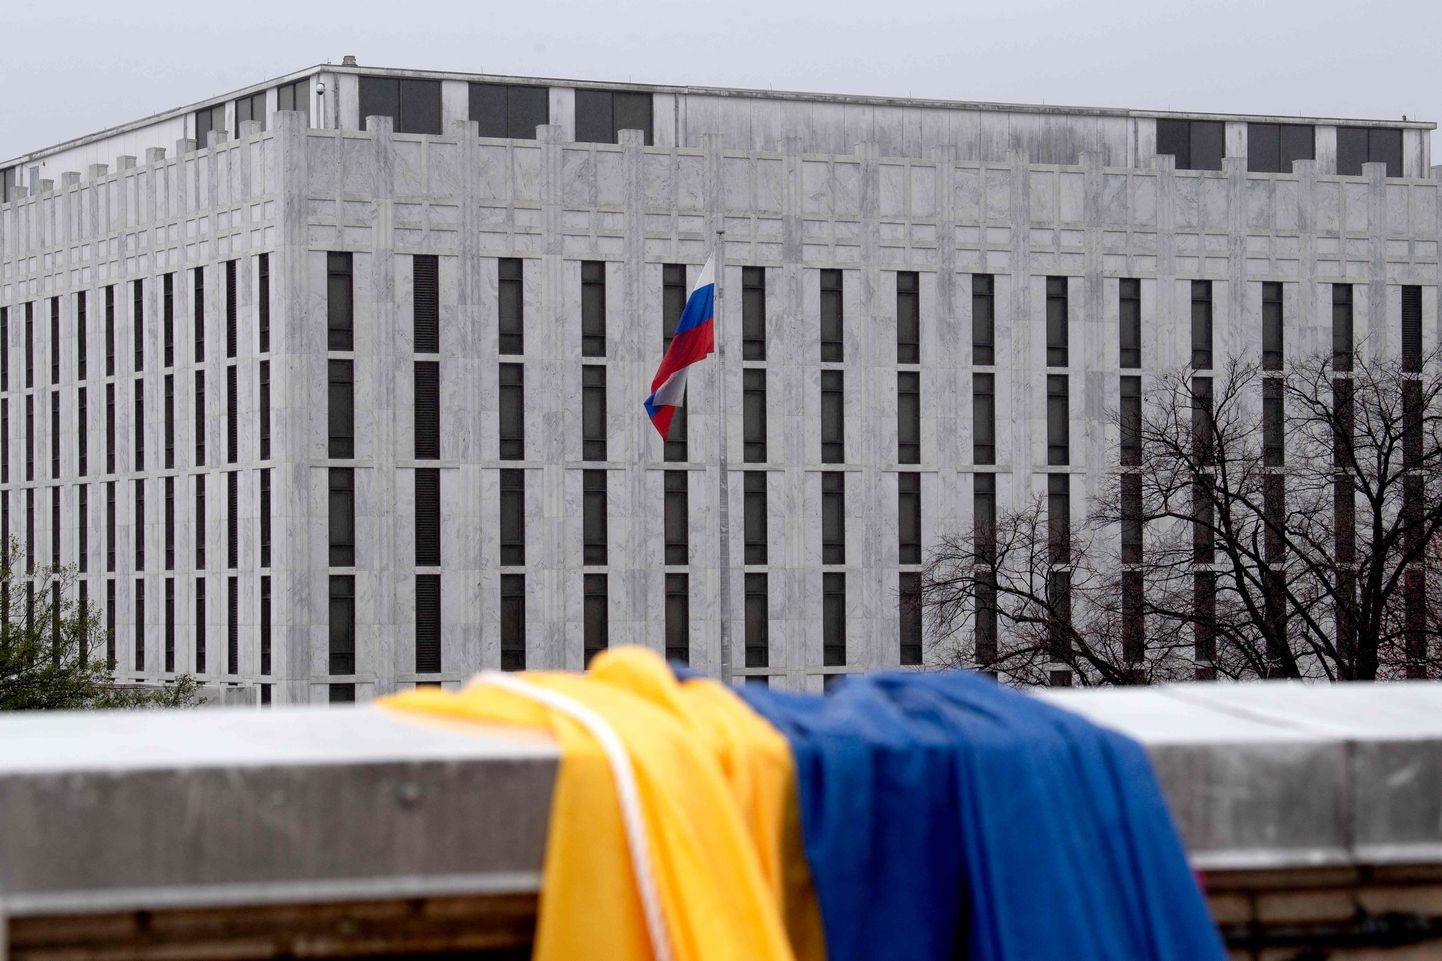 Vaade Venemaa suursaatkonnale Washingtonis 9. mail 2022. Hotellikatusel üle tee on lehvitamiseks valmis seatud Ukraina lipp.